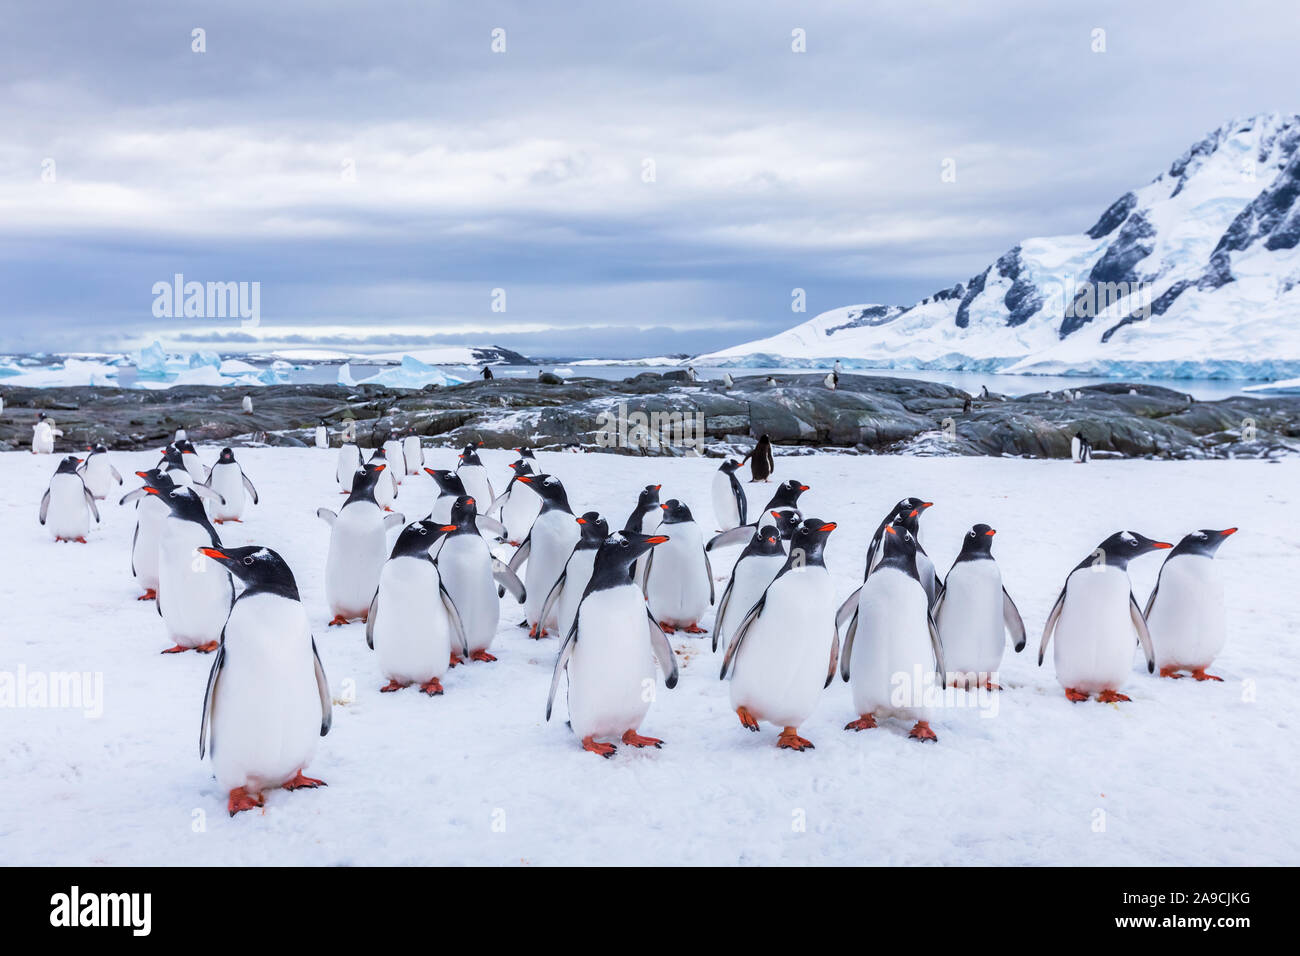 Gruppo di curioso pinguino Gentoo fissando la telecamera in Antartide, asilo nido o waddle di novellame di uccelli marini sul ghiacciaio, colonia in Penisola Antartica, neve Foto Stock